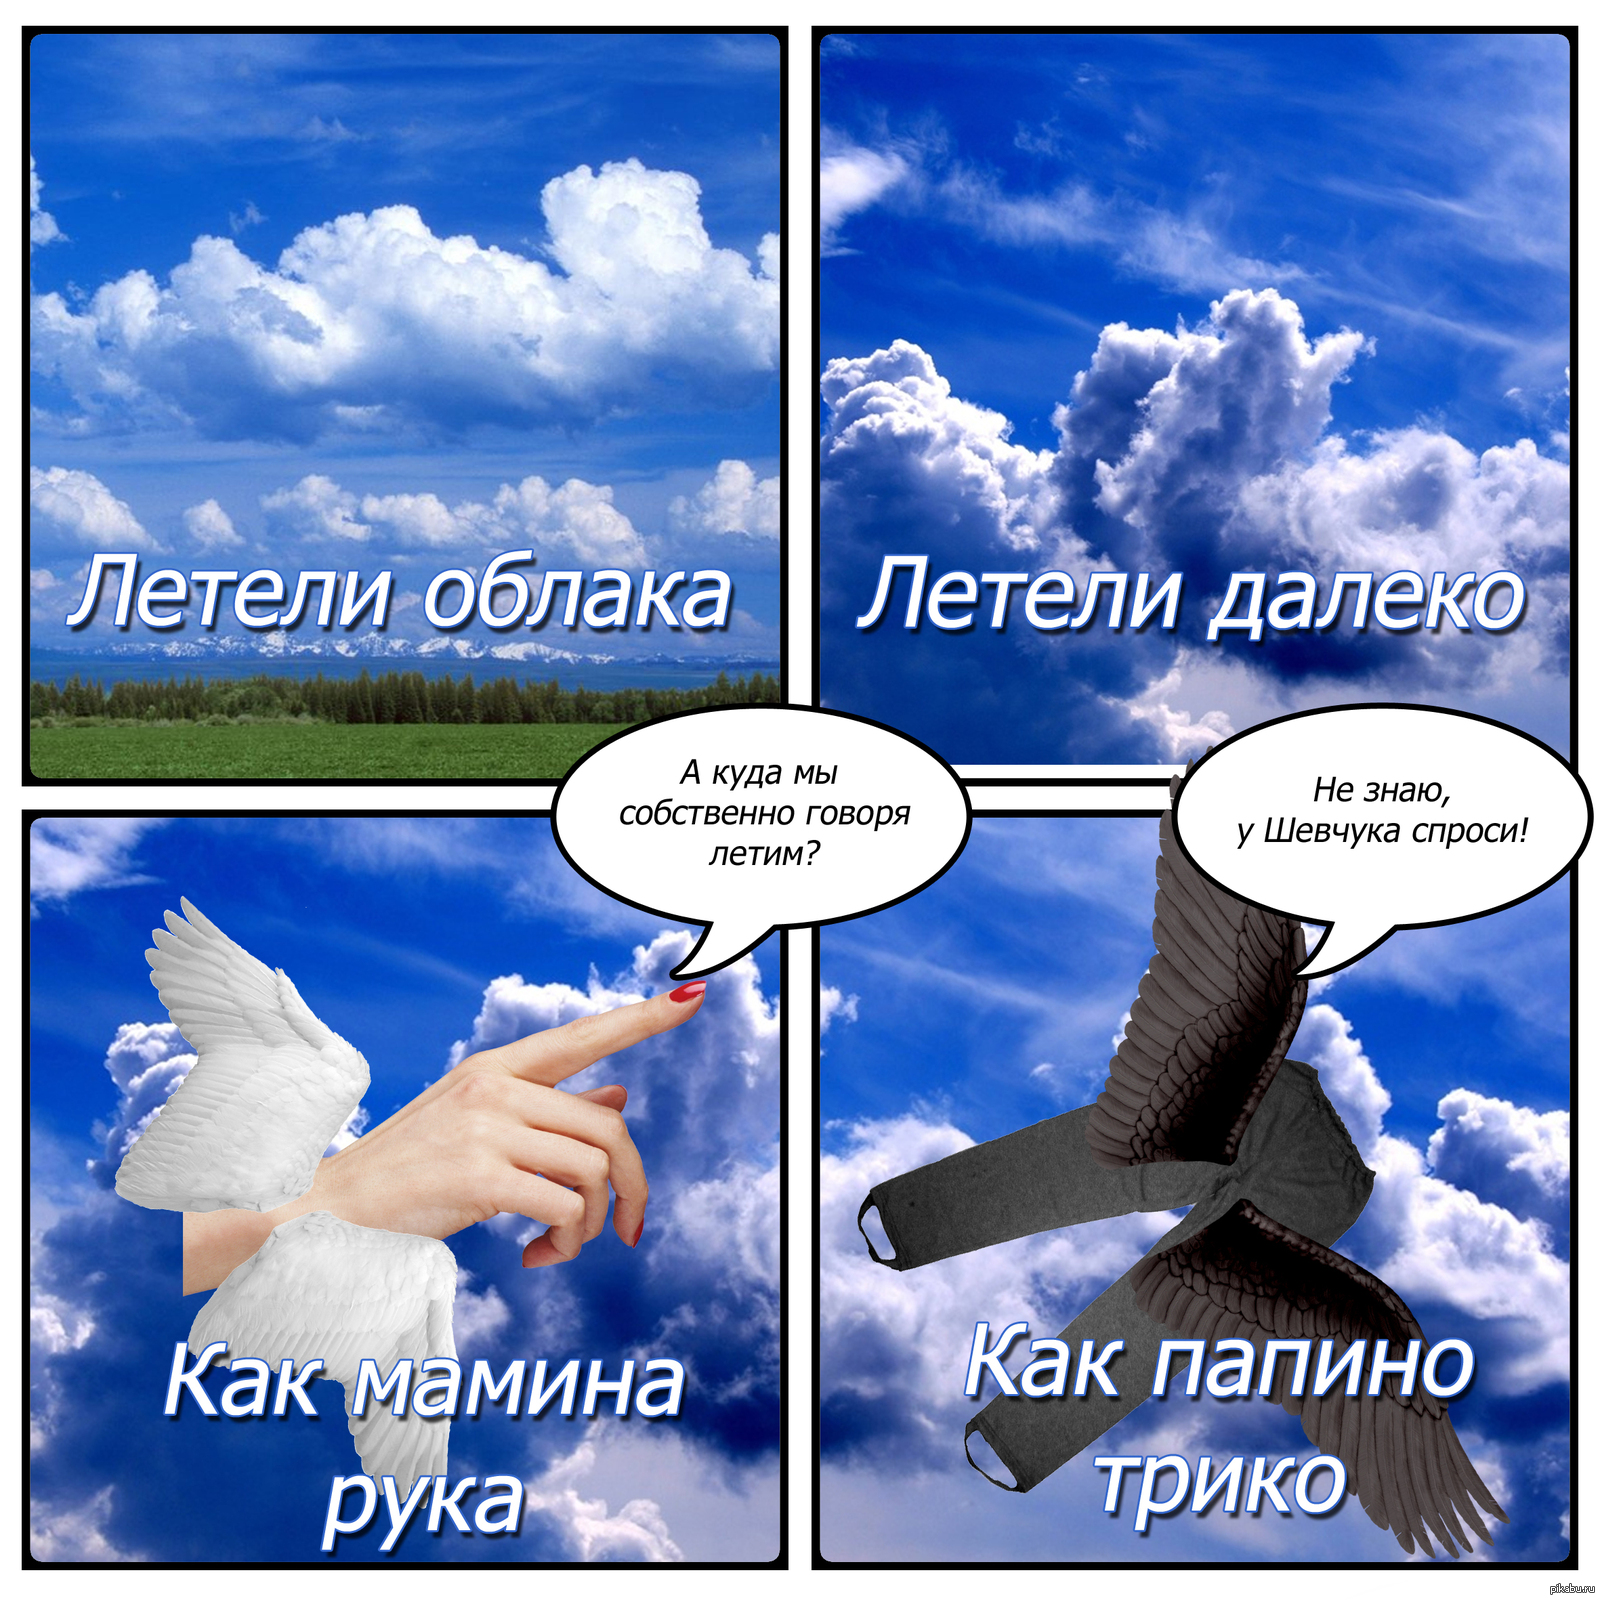 Летели облака слова